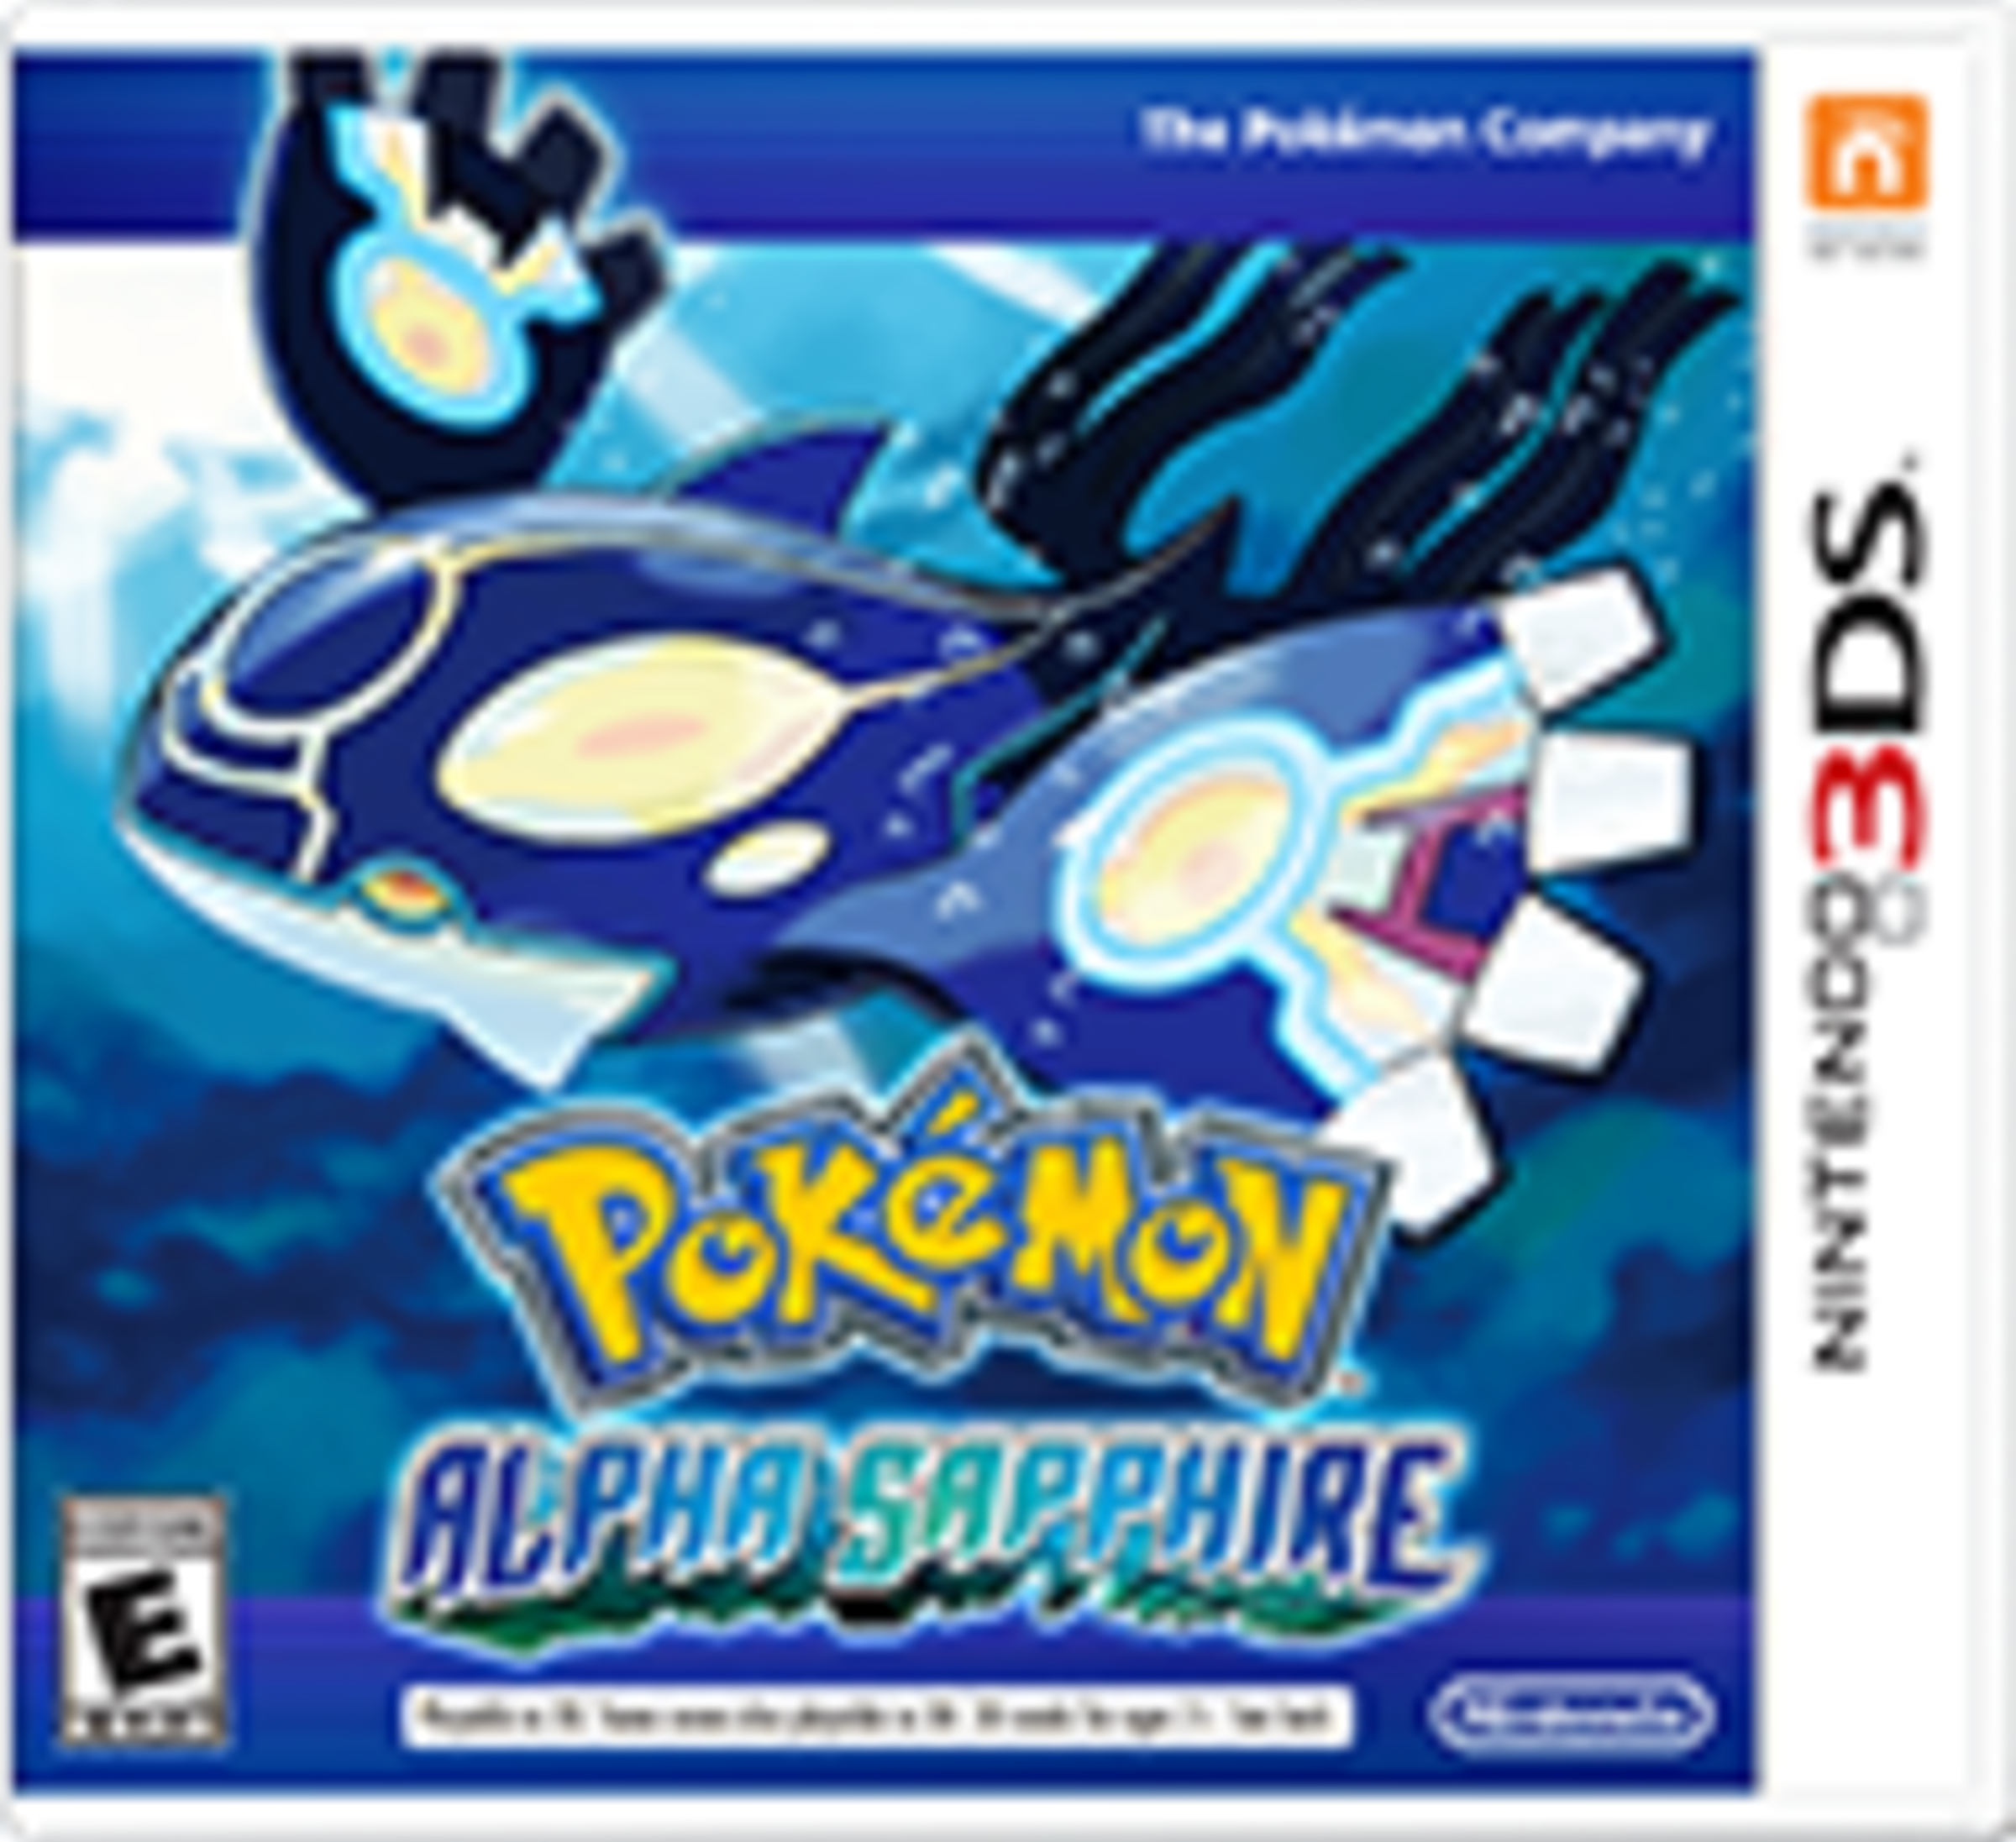 Pokémon Alpha Sapphire for Nintendo 3DS - Nintendo Official Site